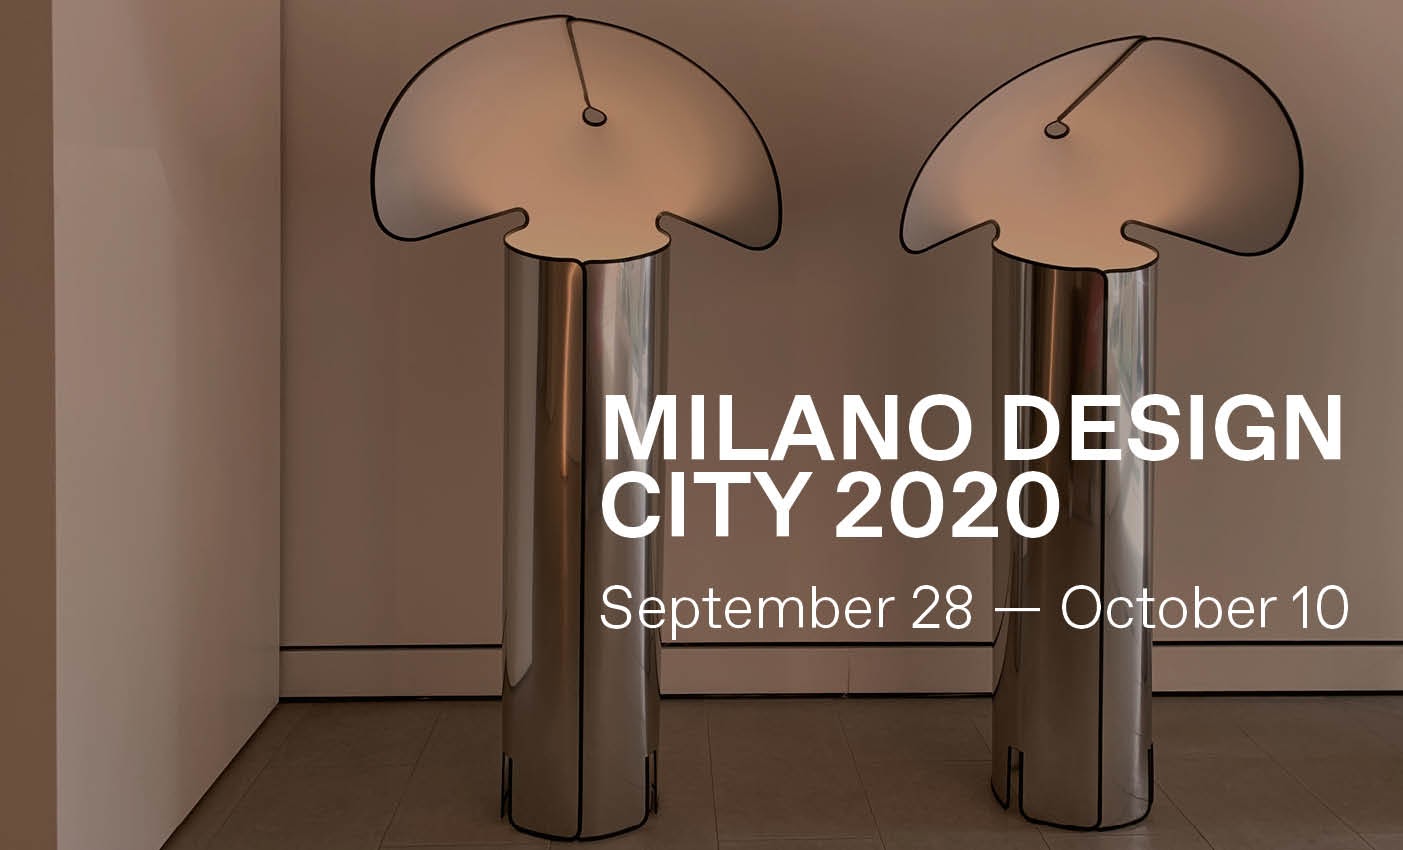 Porta Venezia in Design - . Ready for Milan Design Week 2020